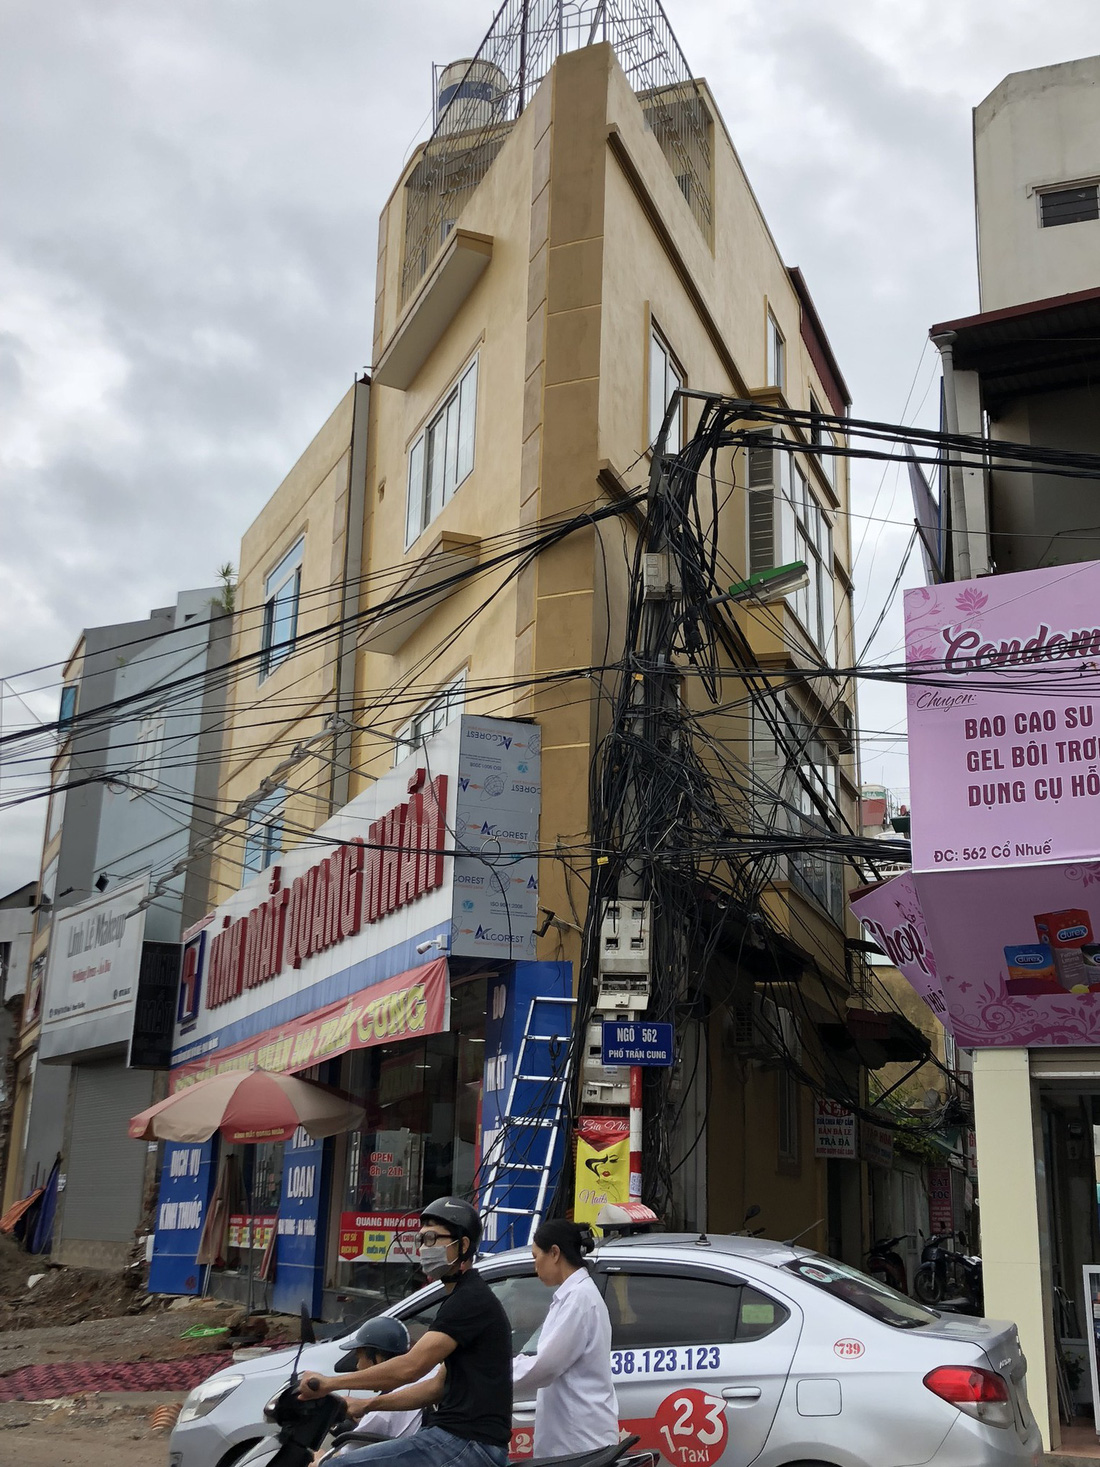 Những ngôi nhà kì dị chỉ có ở phố Phạm Văn Đồng - Ảnh 5.